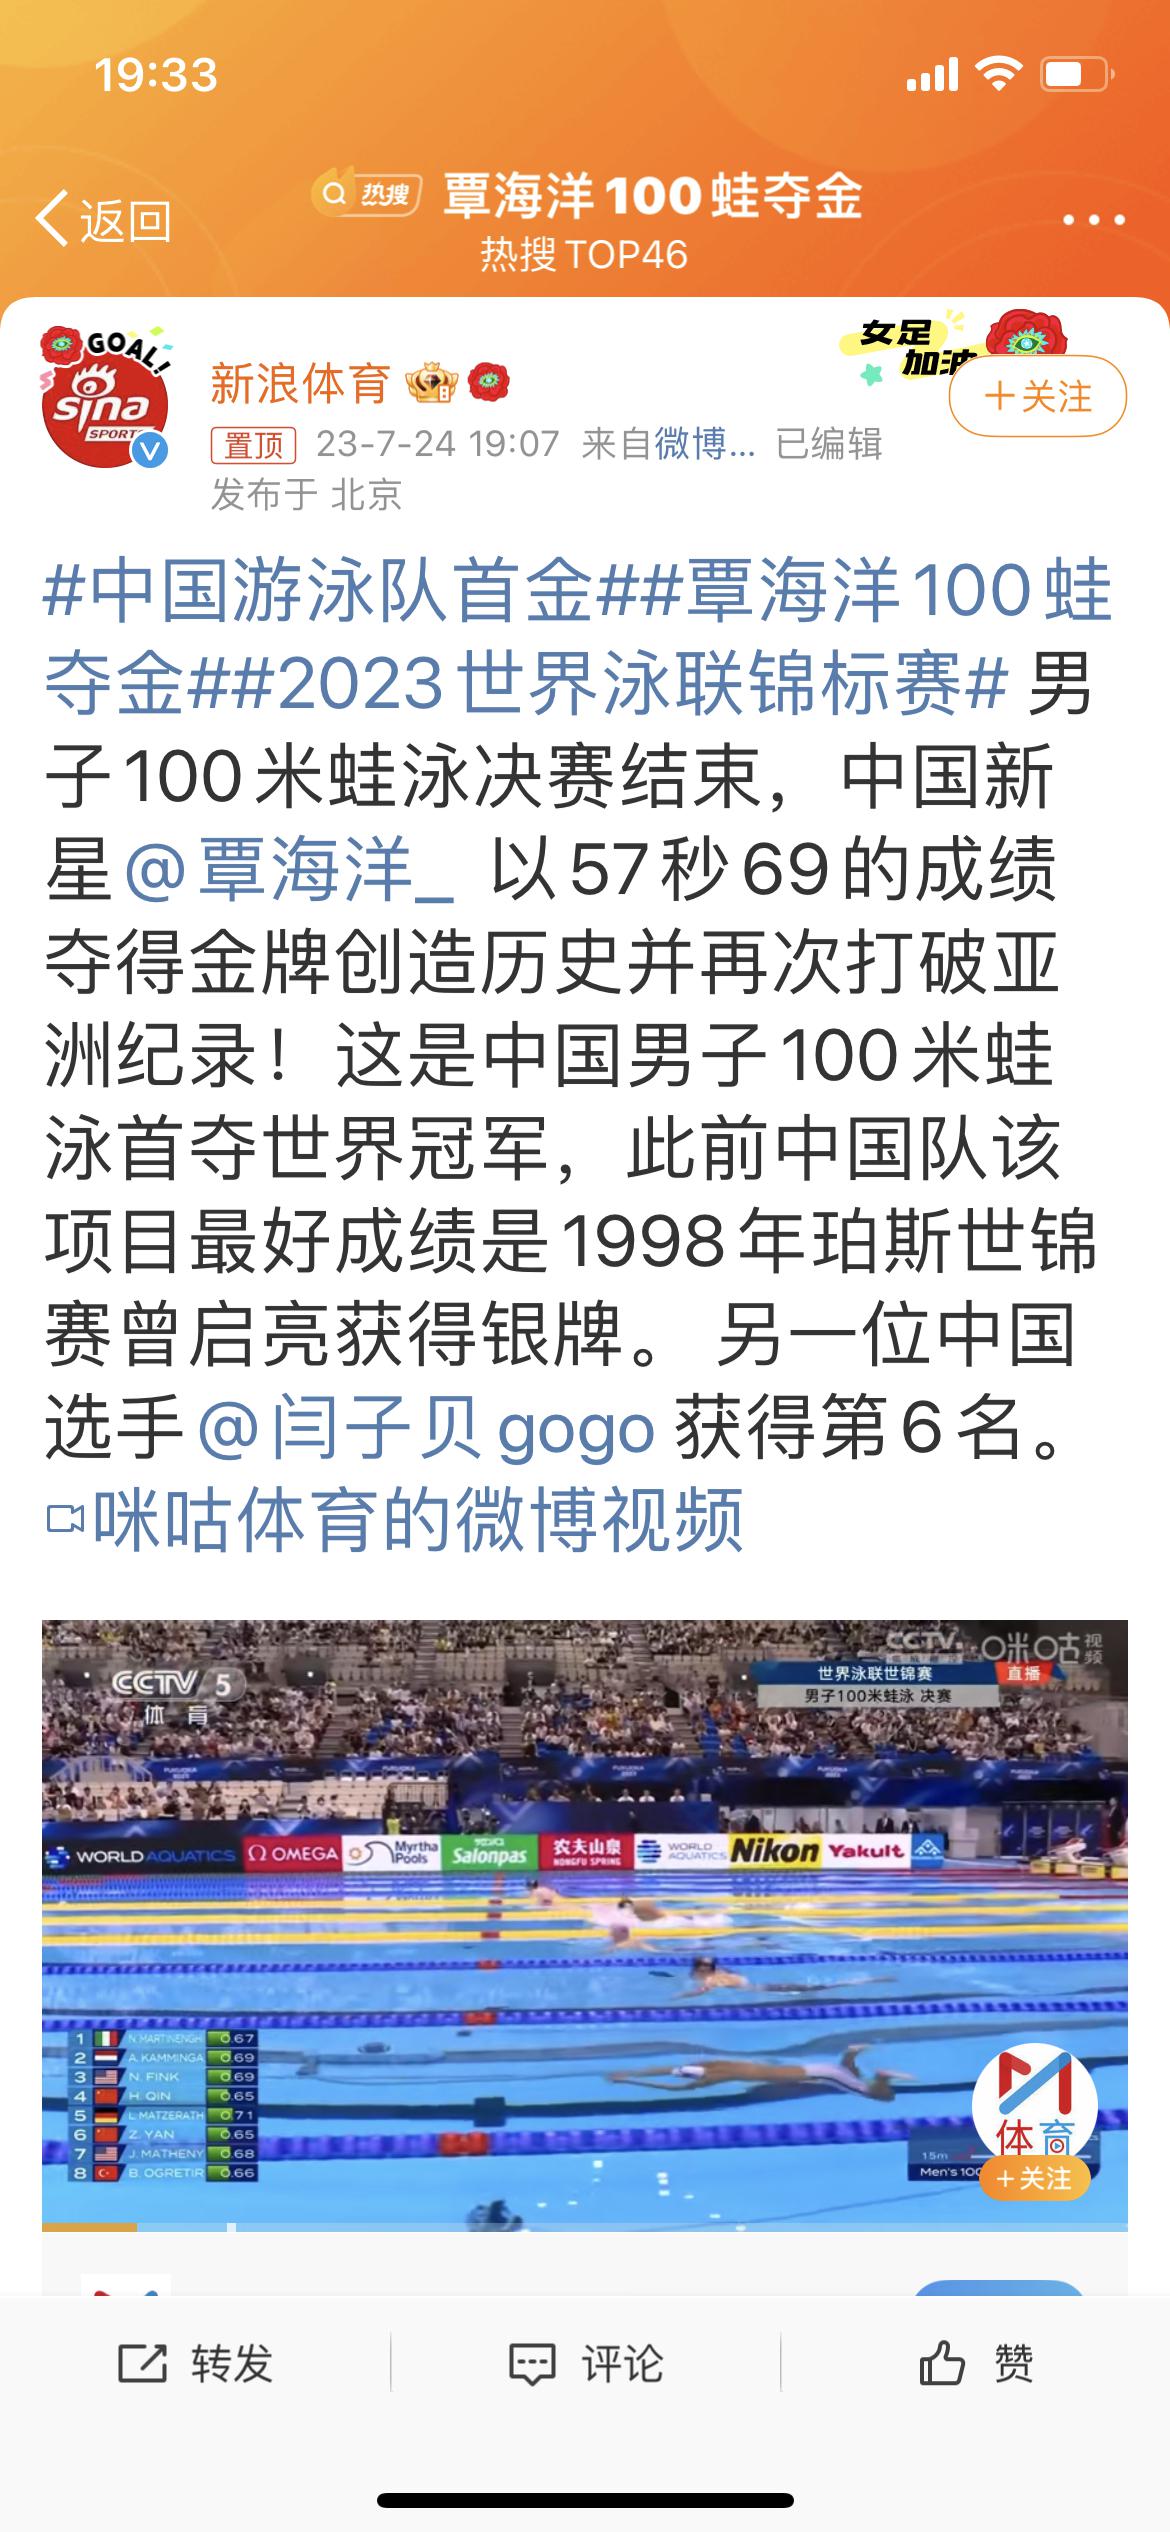 #中国游泳队首金##覃海洋100蛙夺金##2023世界泳联锦标赛#男子100米蛙(1)